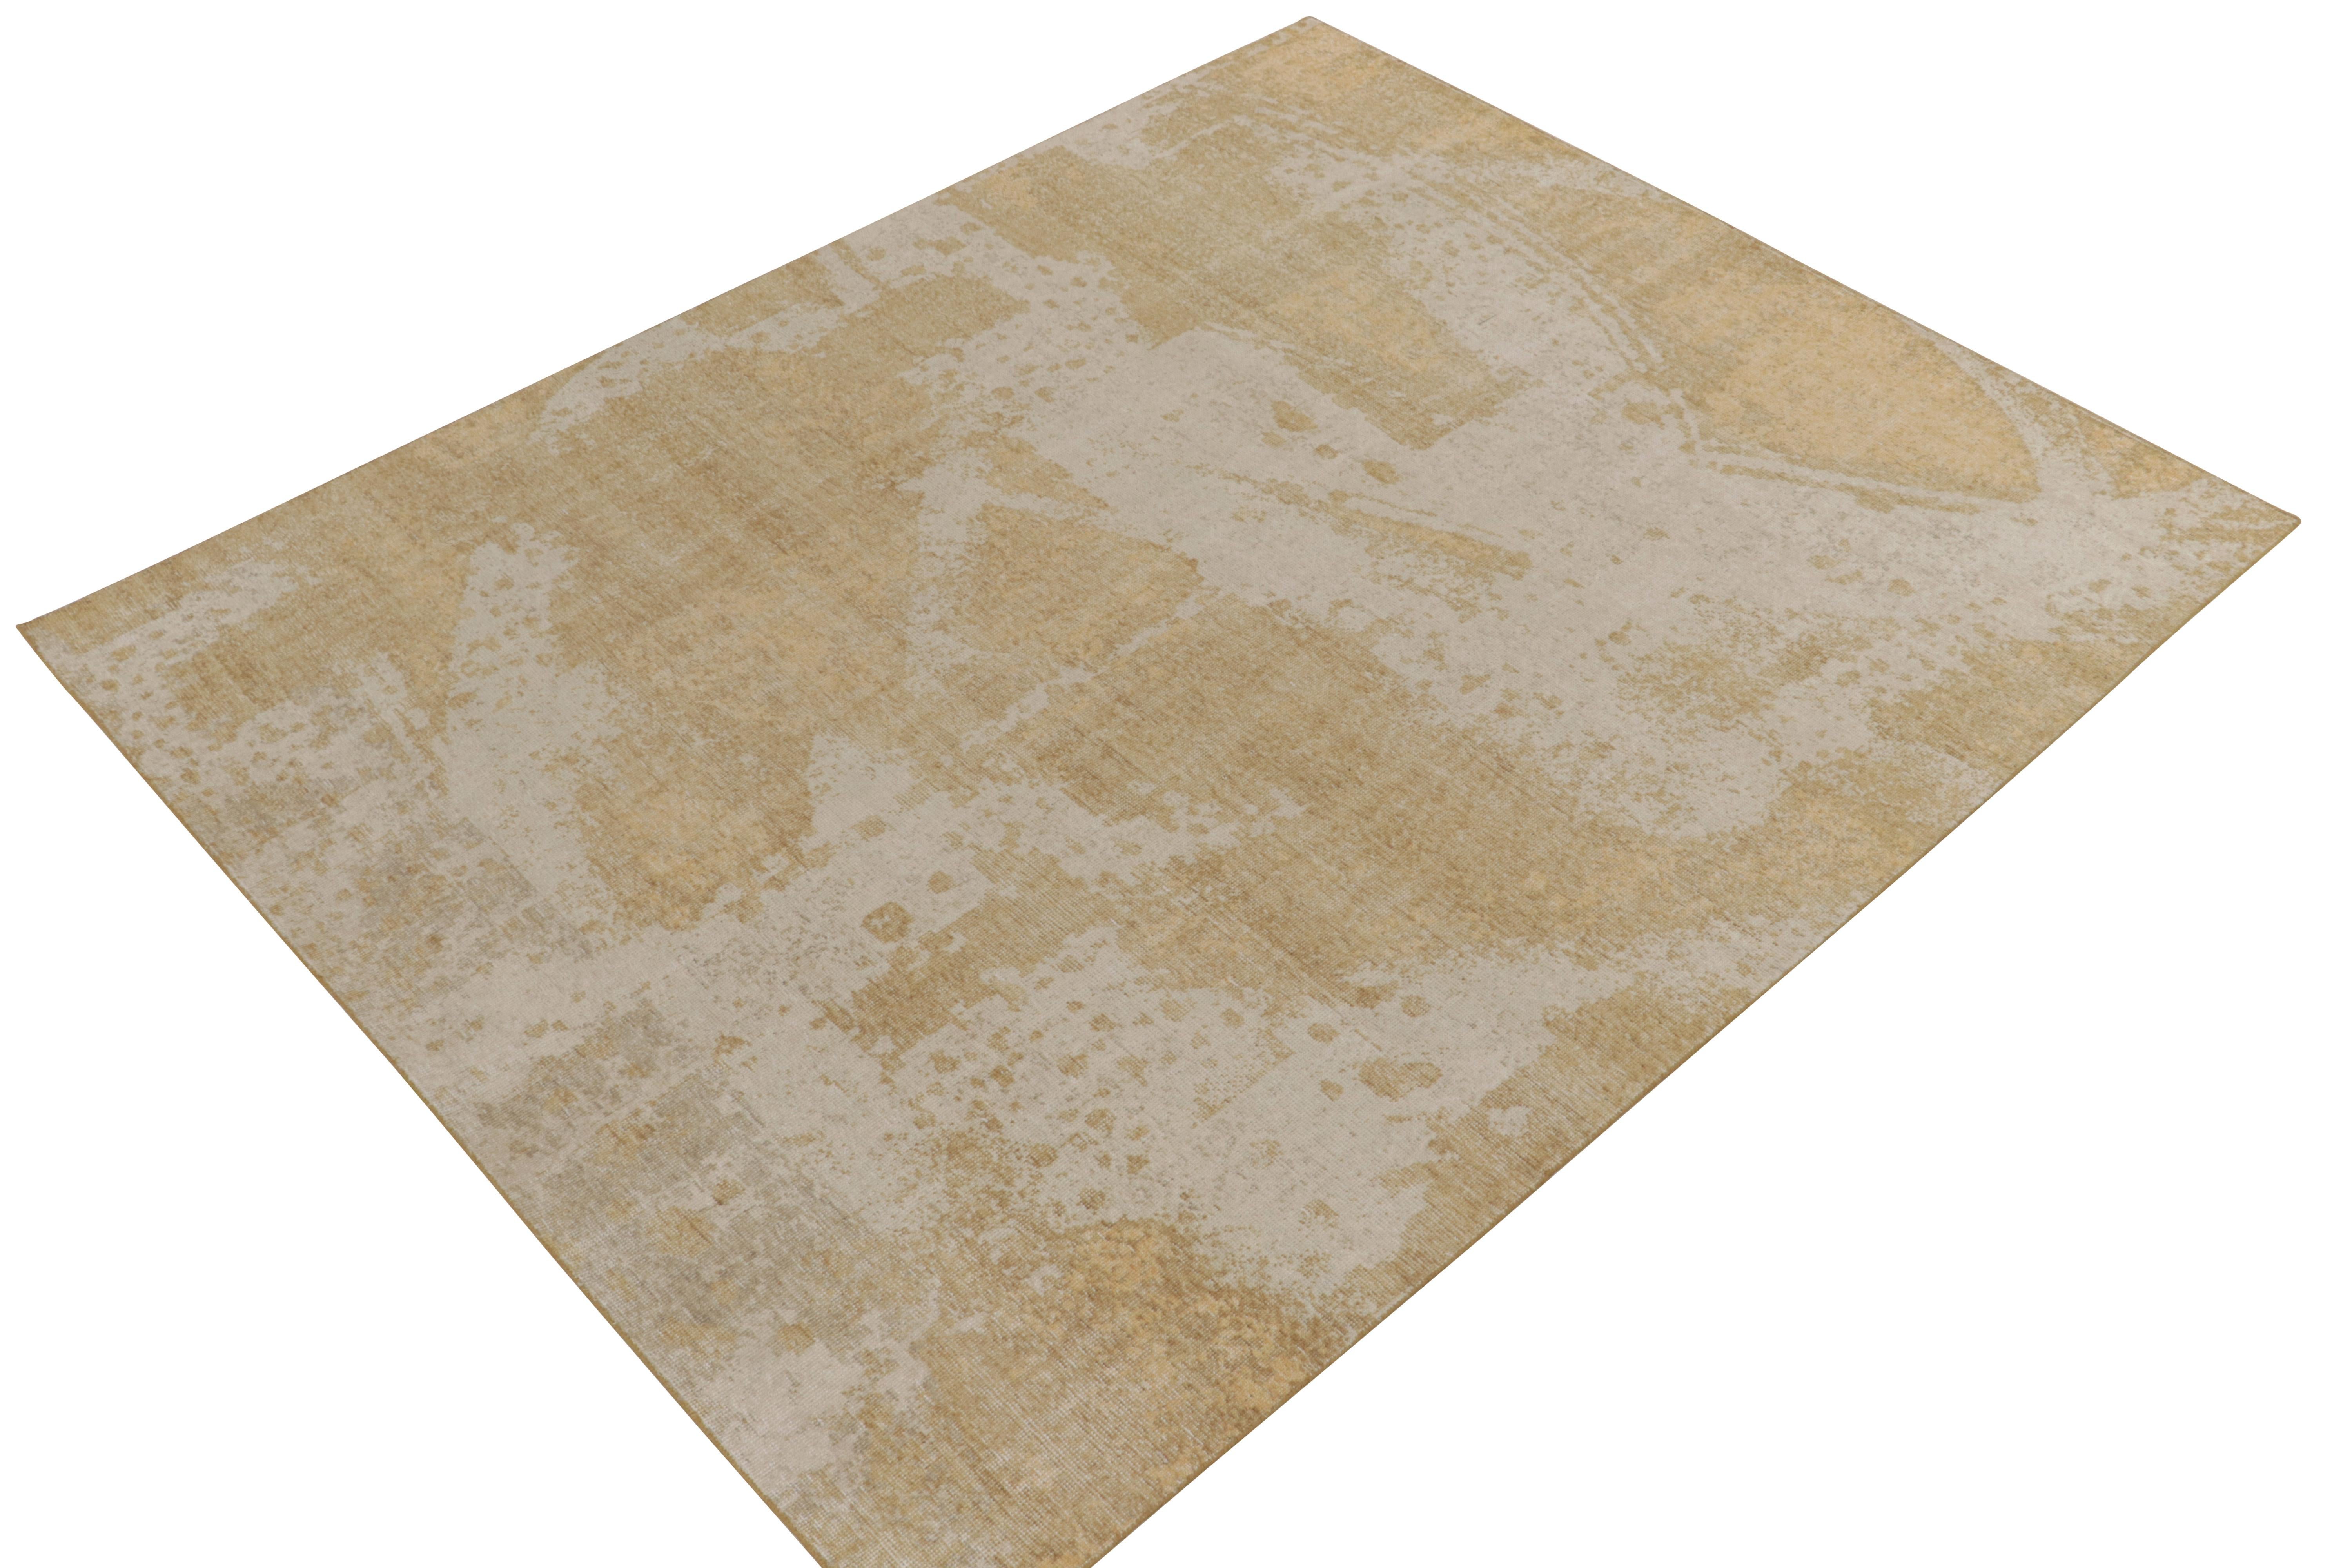 Dieser abstrakte Teppich im Format 8x10 aus der Homage-Kollektion von Rug & Kilim zeichnet sich durch ein Positiv-Negativ-Spiel aus üppigem Beige und sattem Gold aus, das eine verführerische Interpretation dieses Stils darstellt. Ein Beispiel für